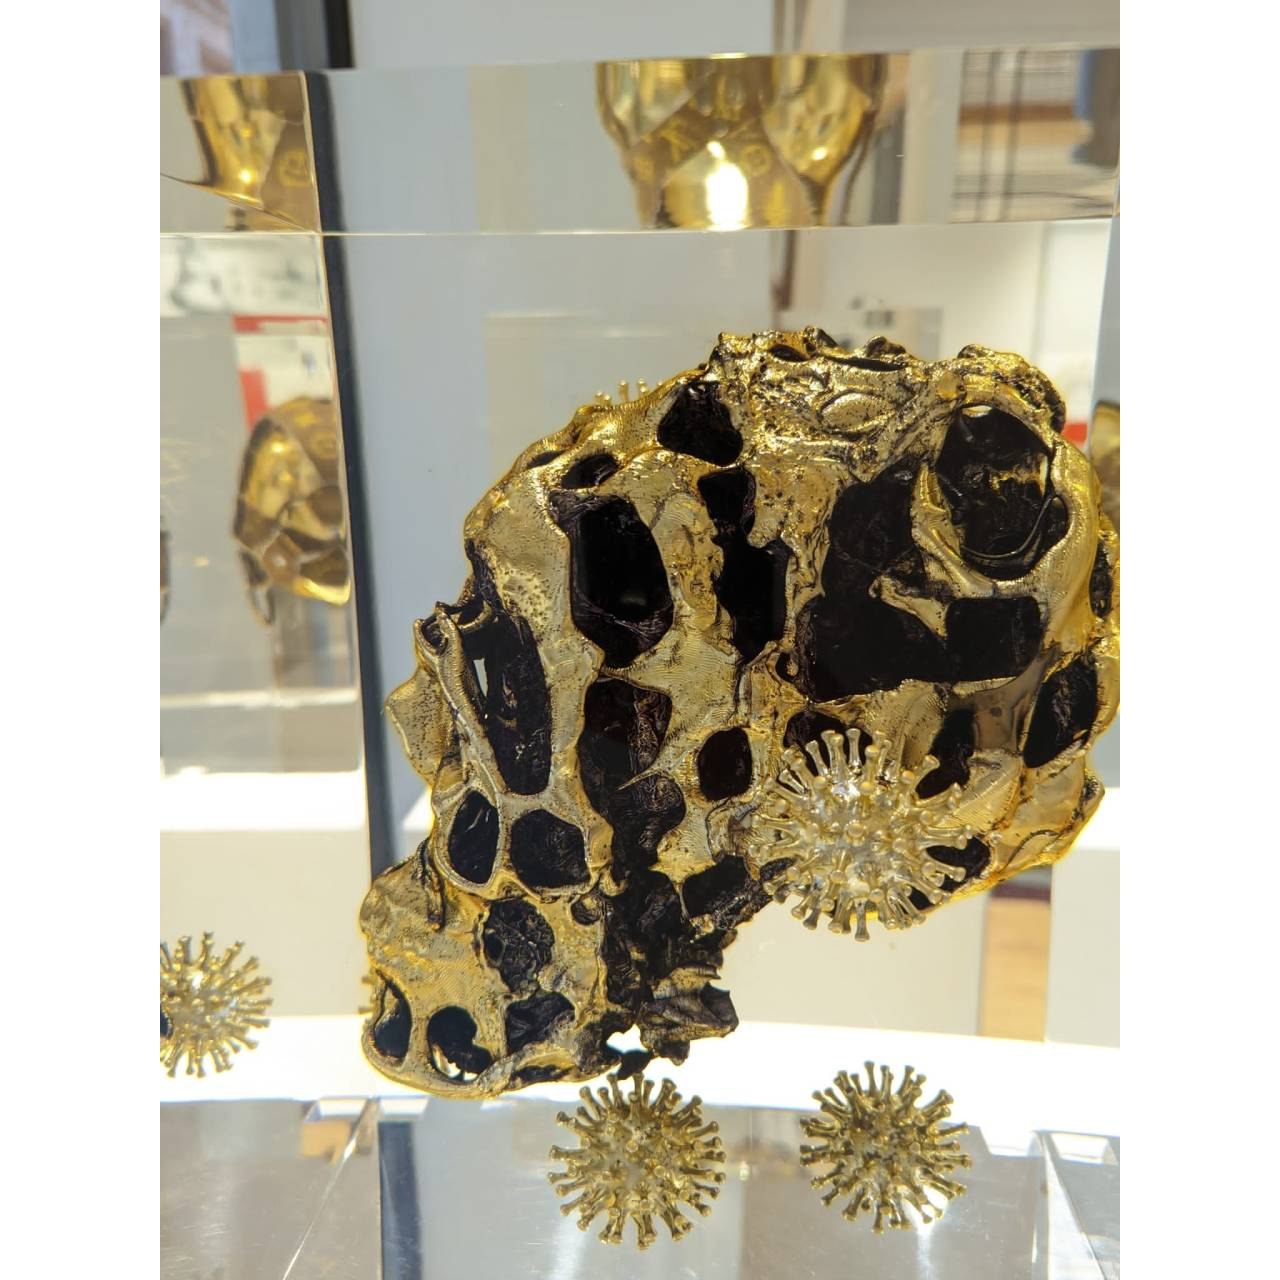 Alexandre NICOLAS, Golden virus, Inclusion cristal synthèse et résine, 33 X 26.5 X 26.5 cm